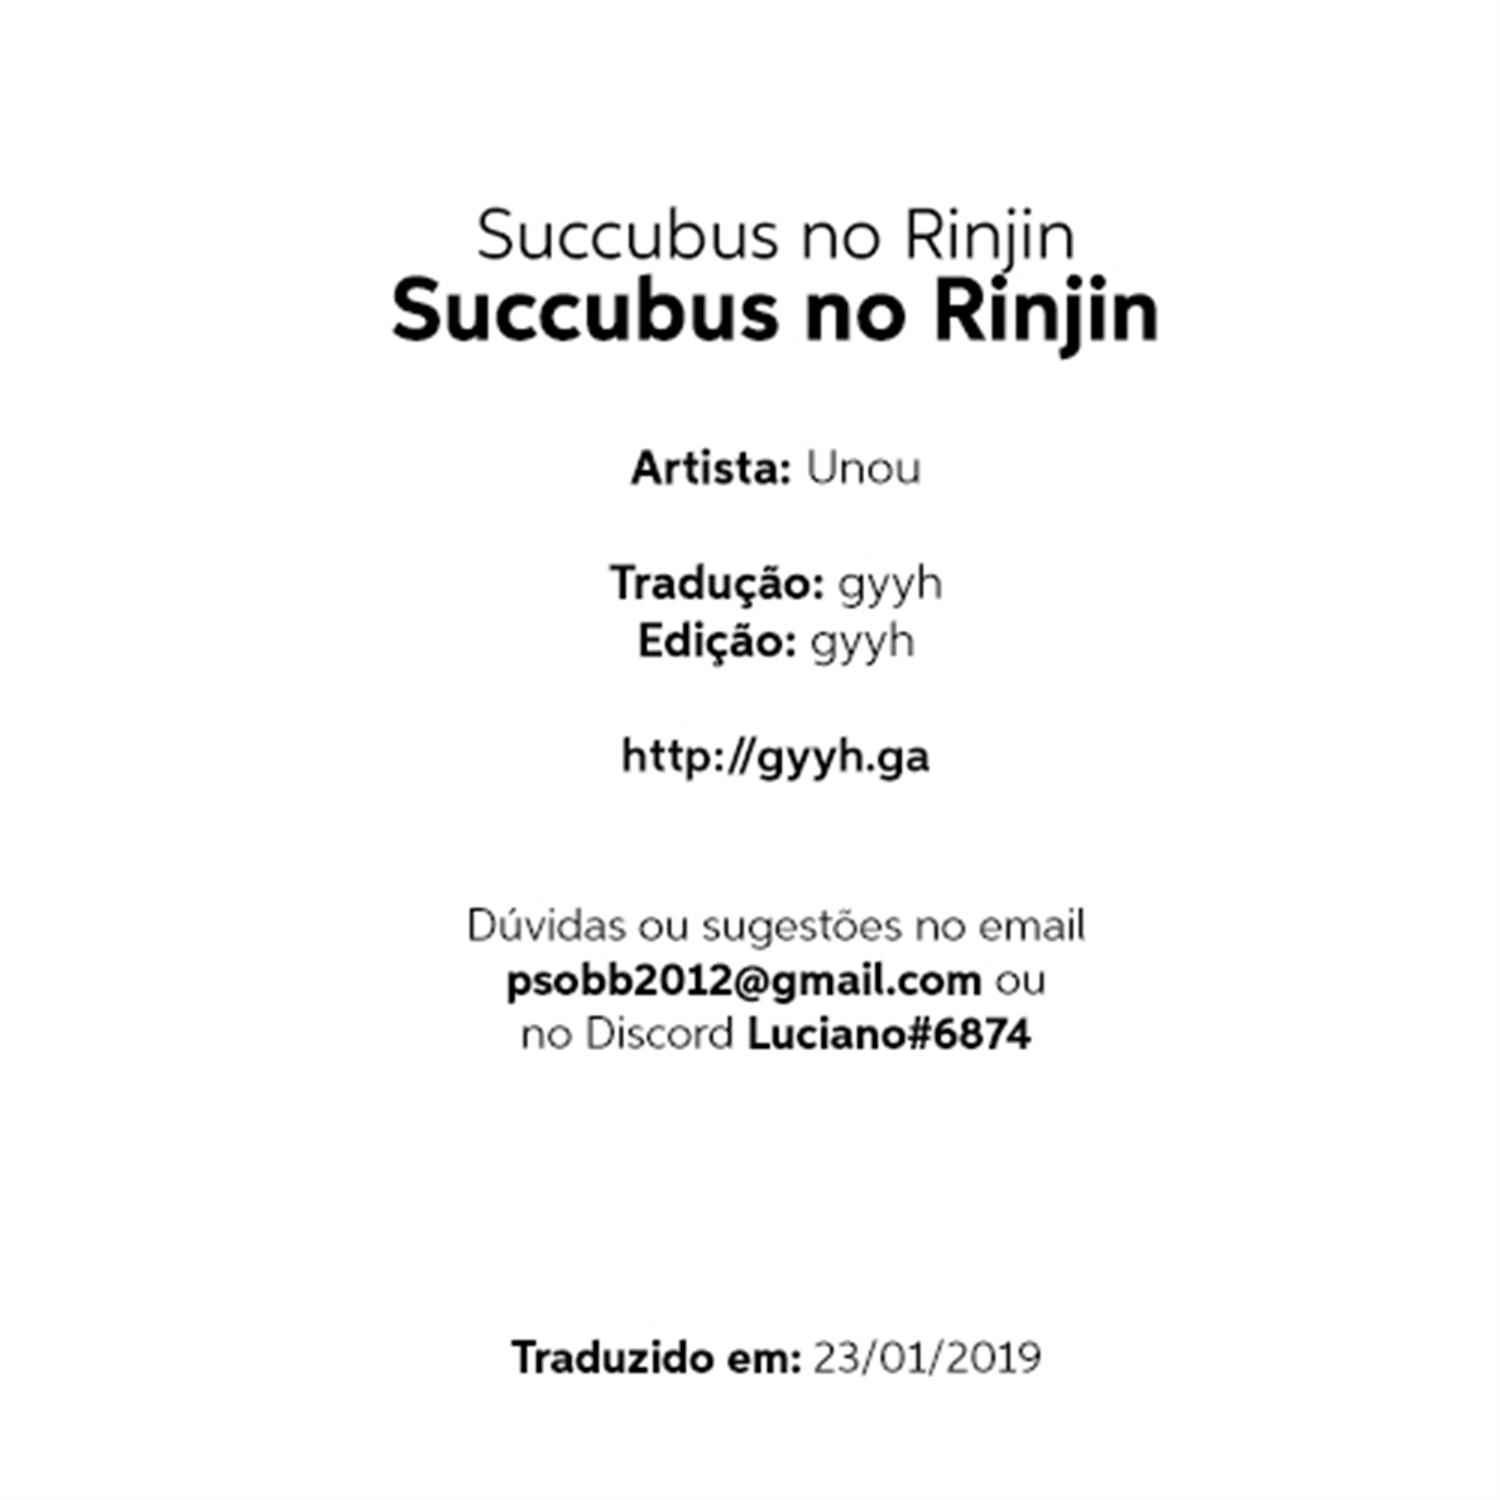 Succubus no Rinjin